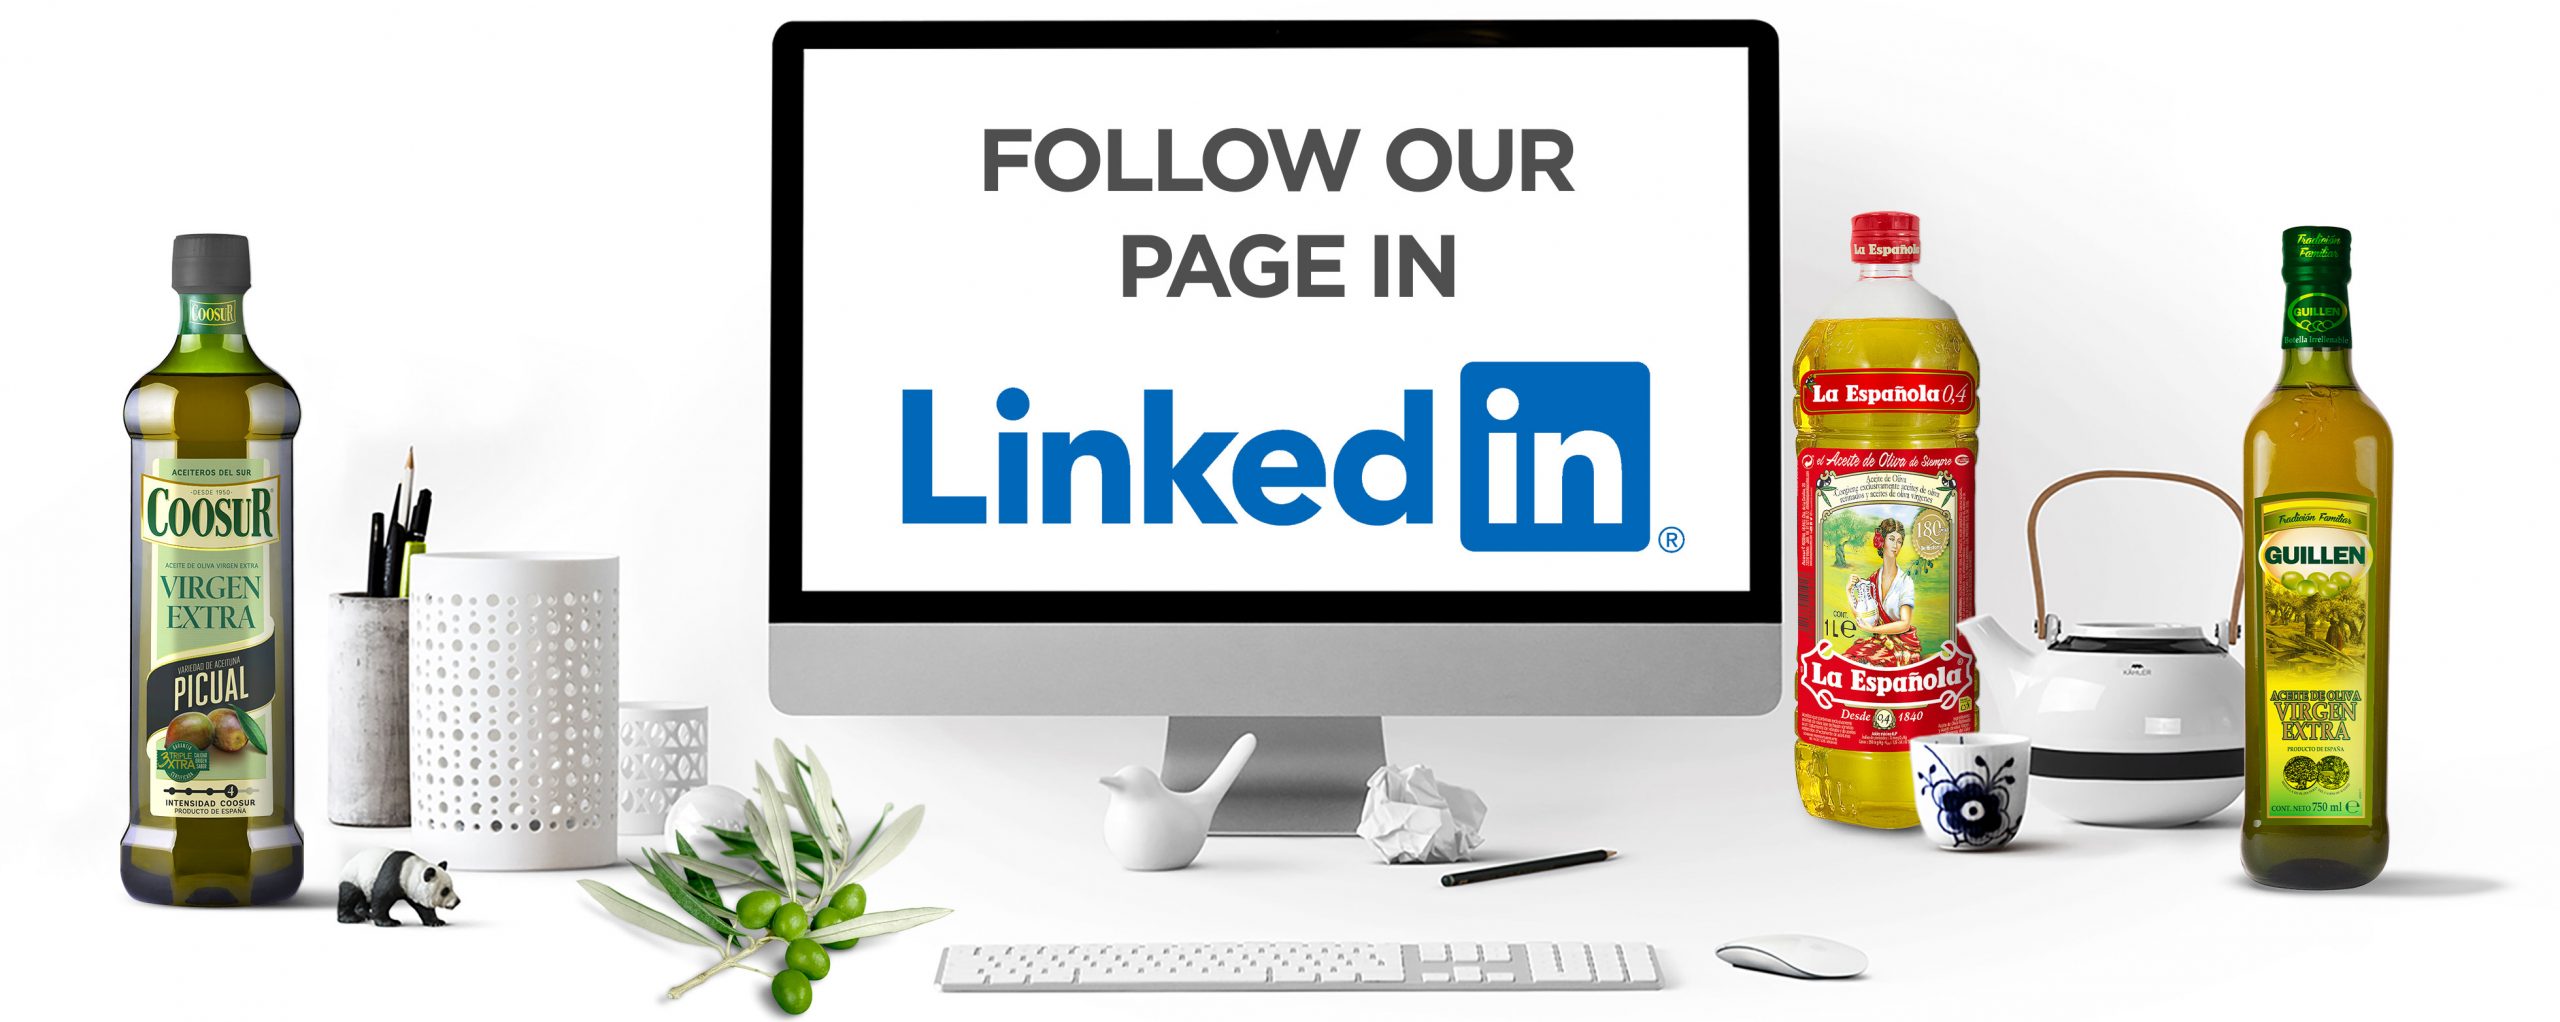 Follow us in LinkedIn